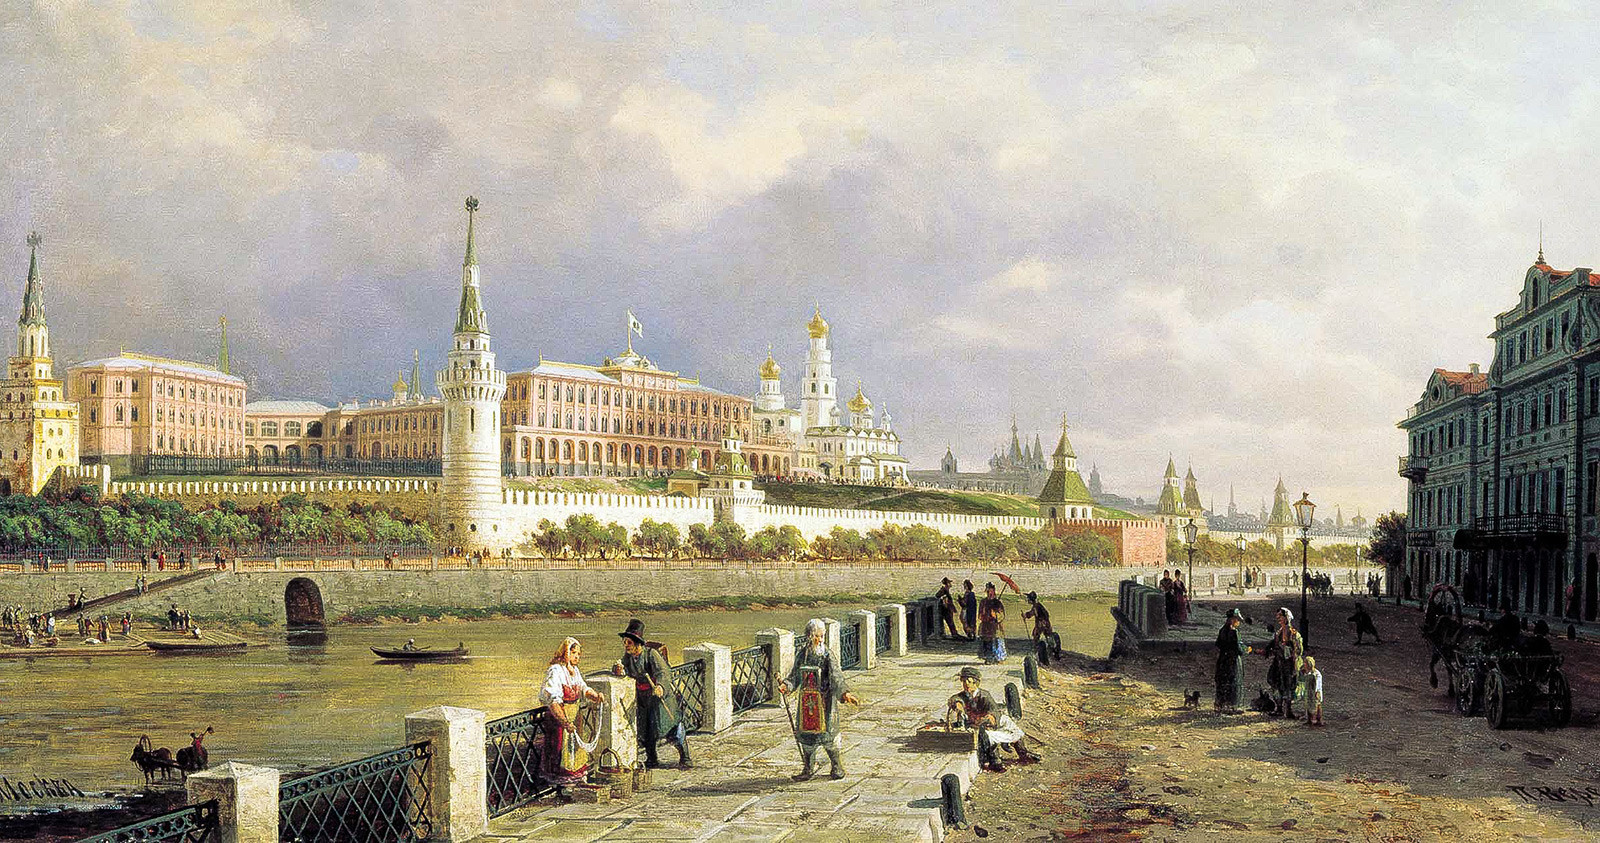 Vista do Kremlin por Piotr Vereschaguin, 1879